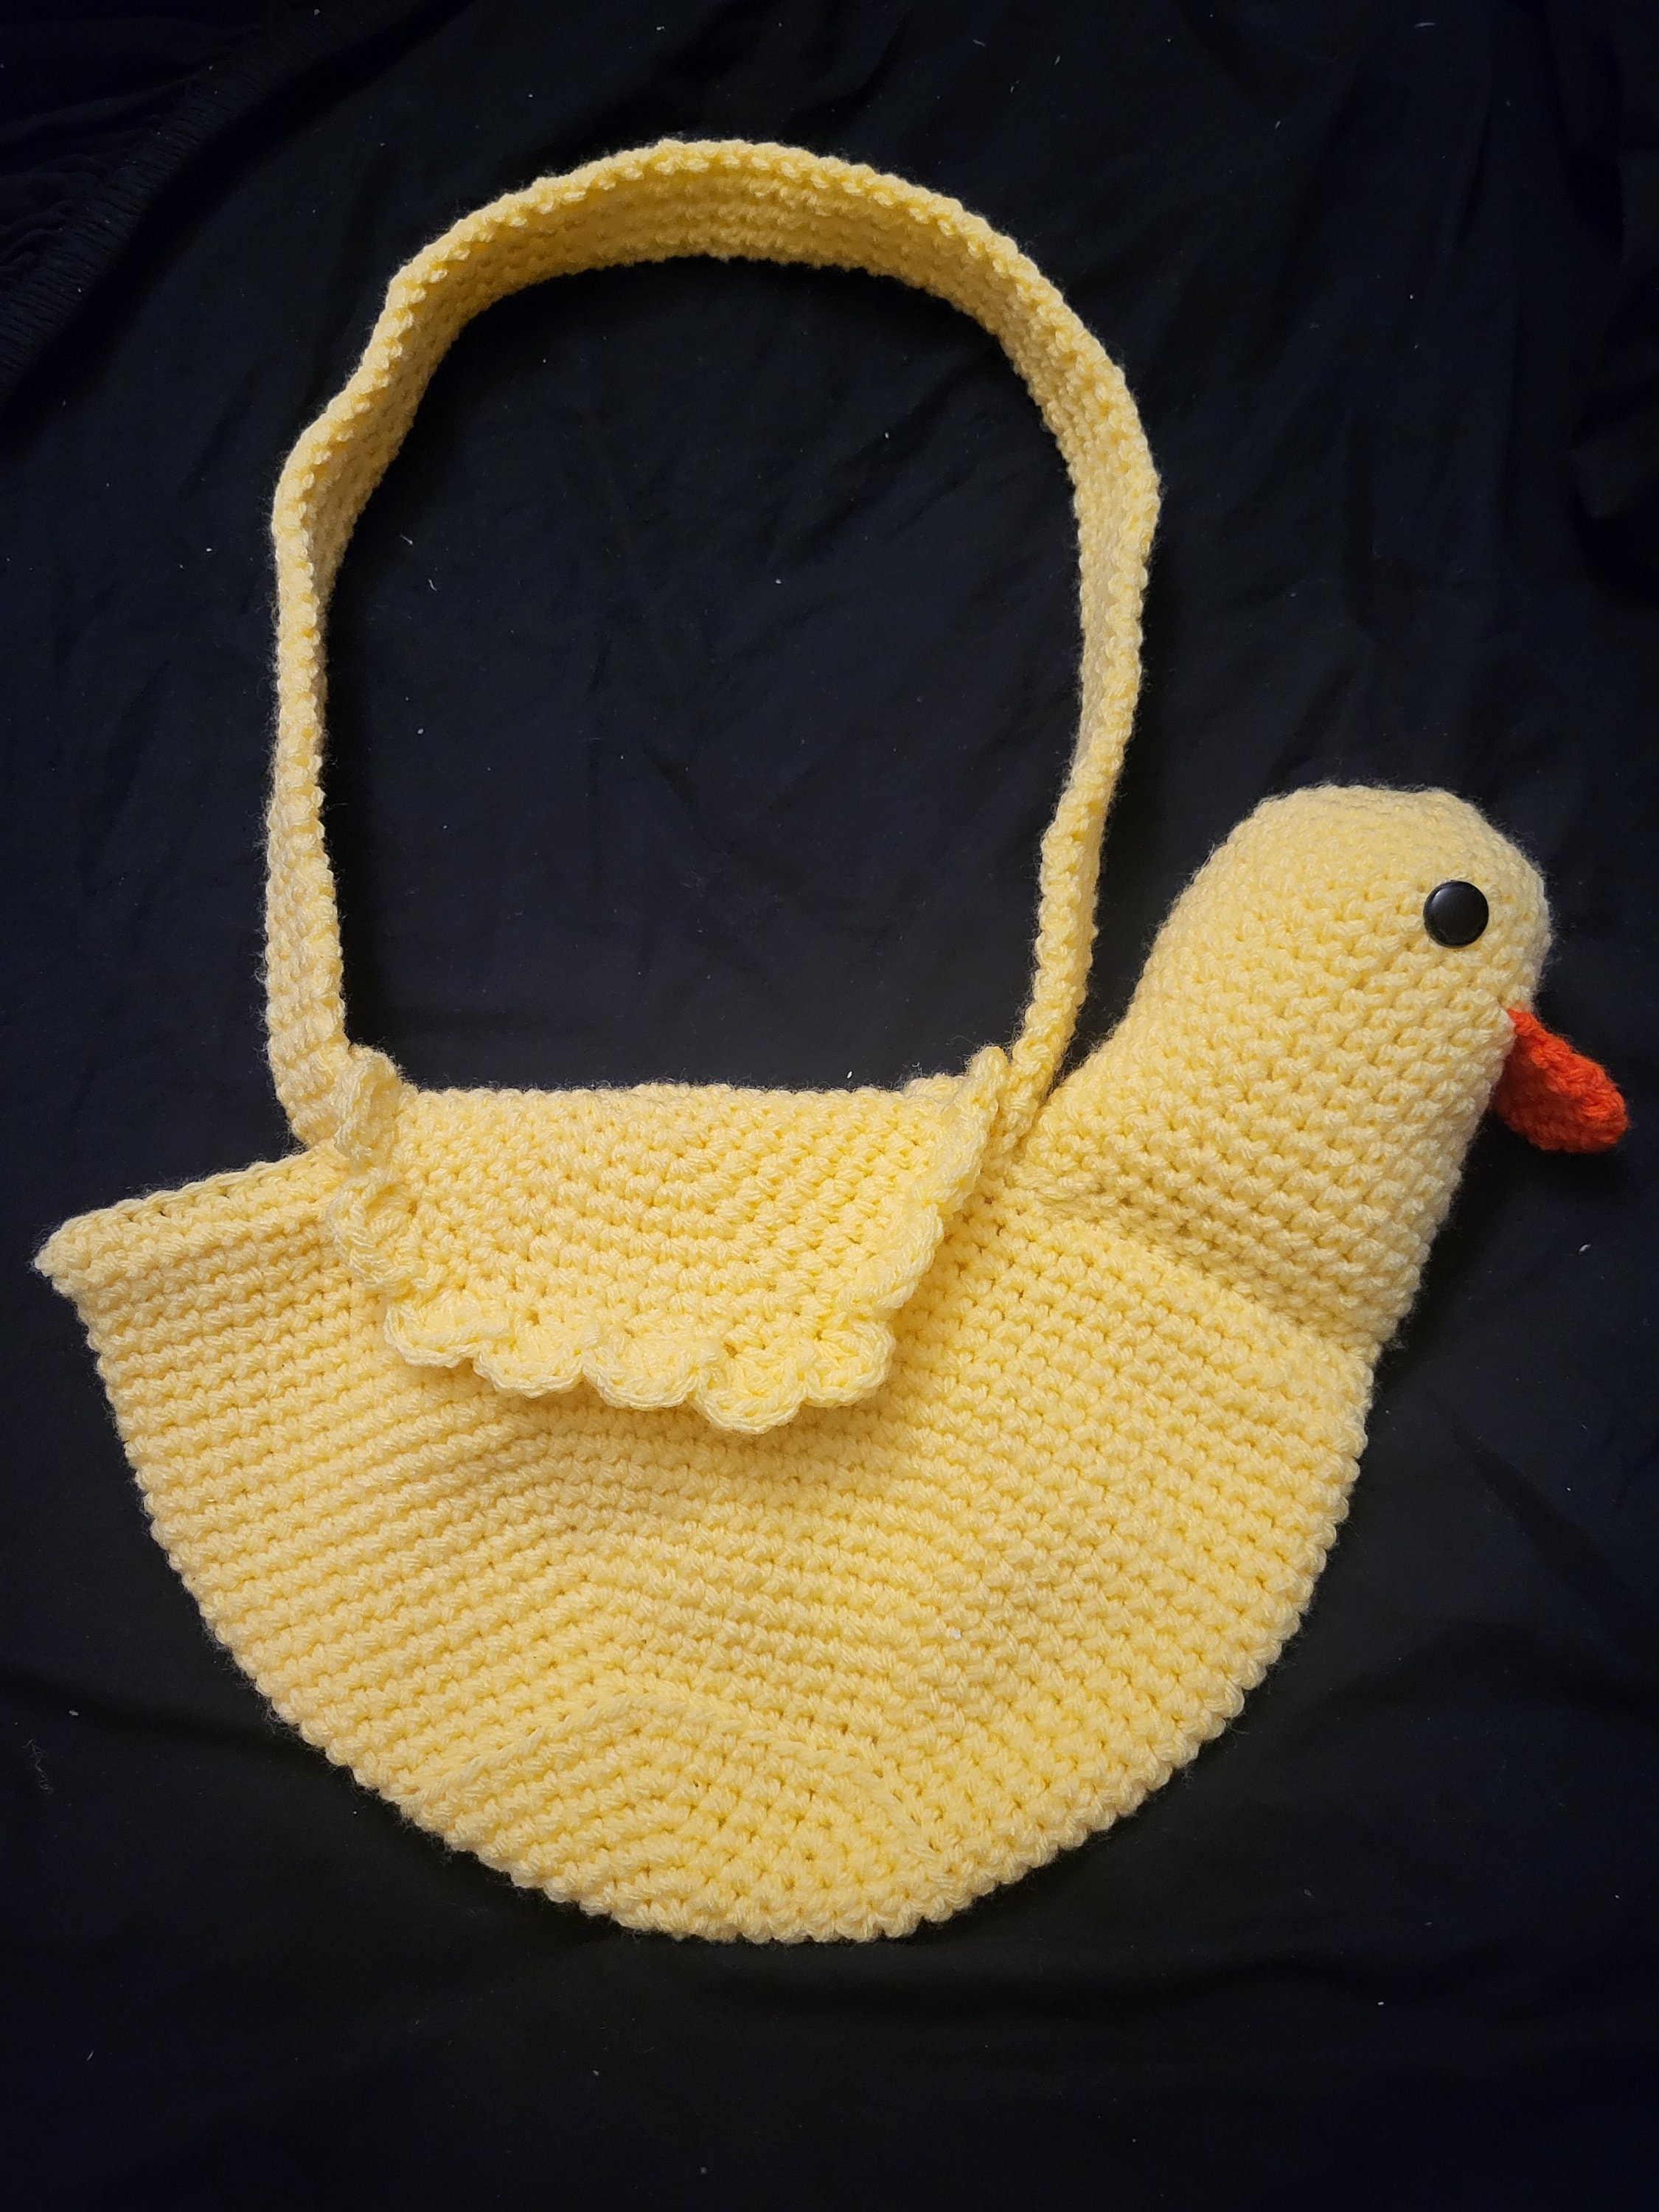 Duck Bag: Crochet pattern